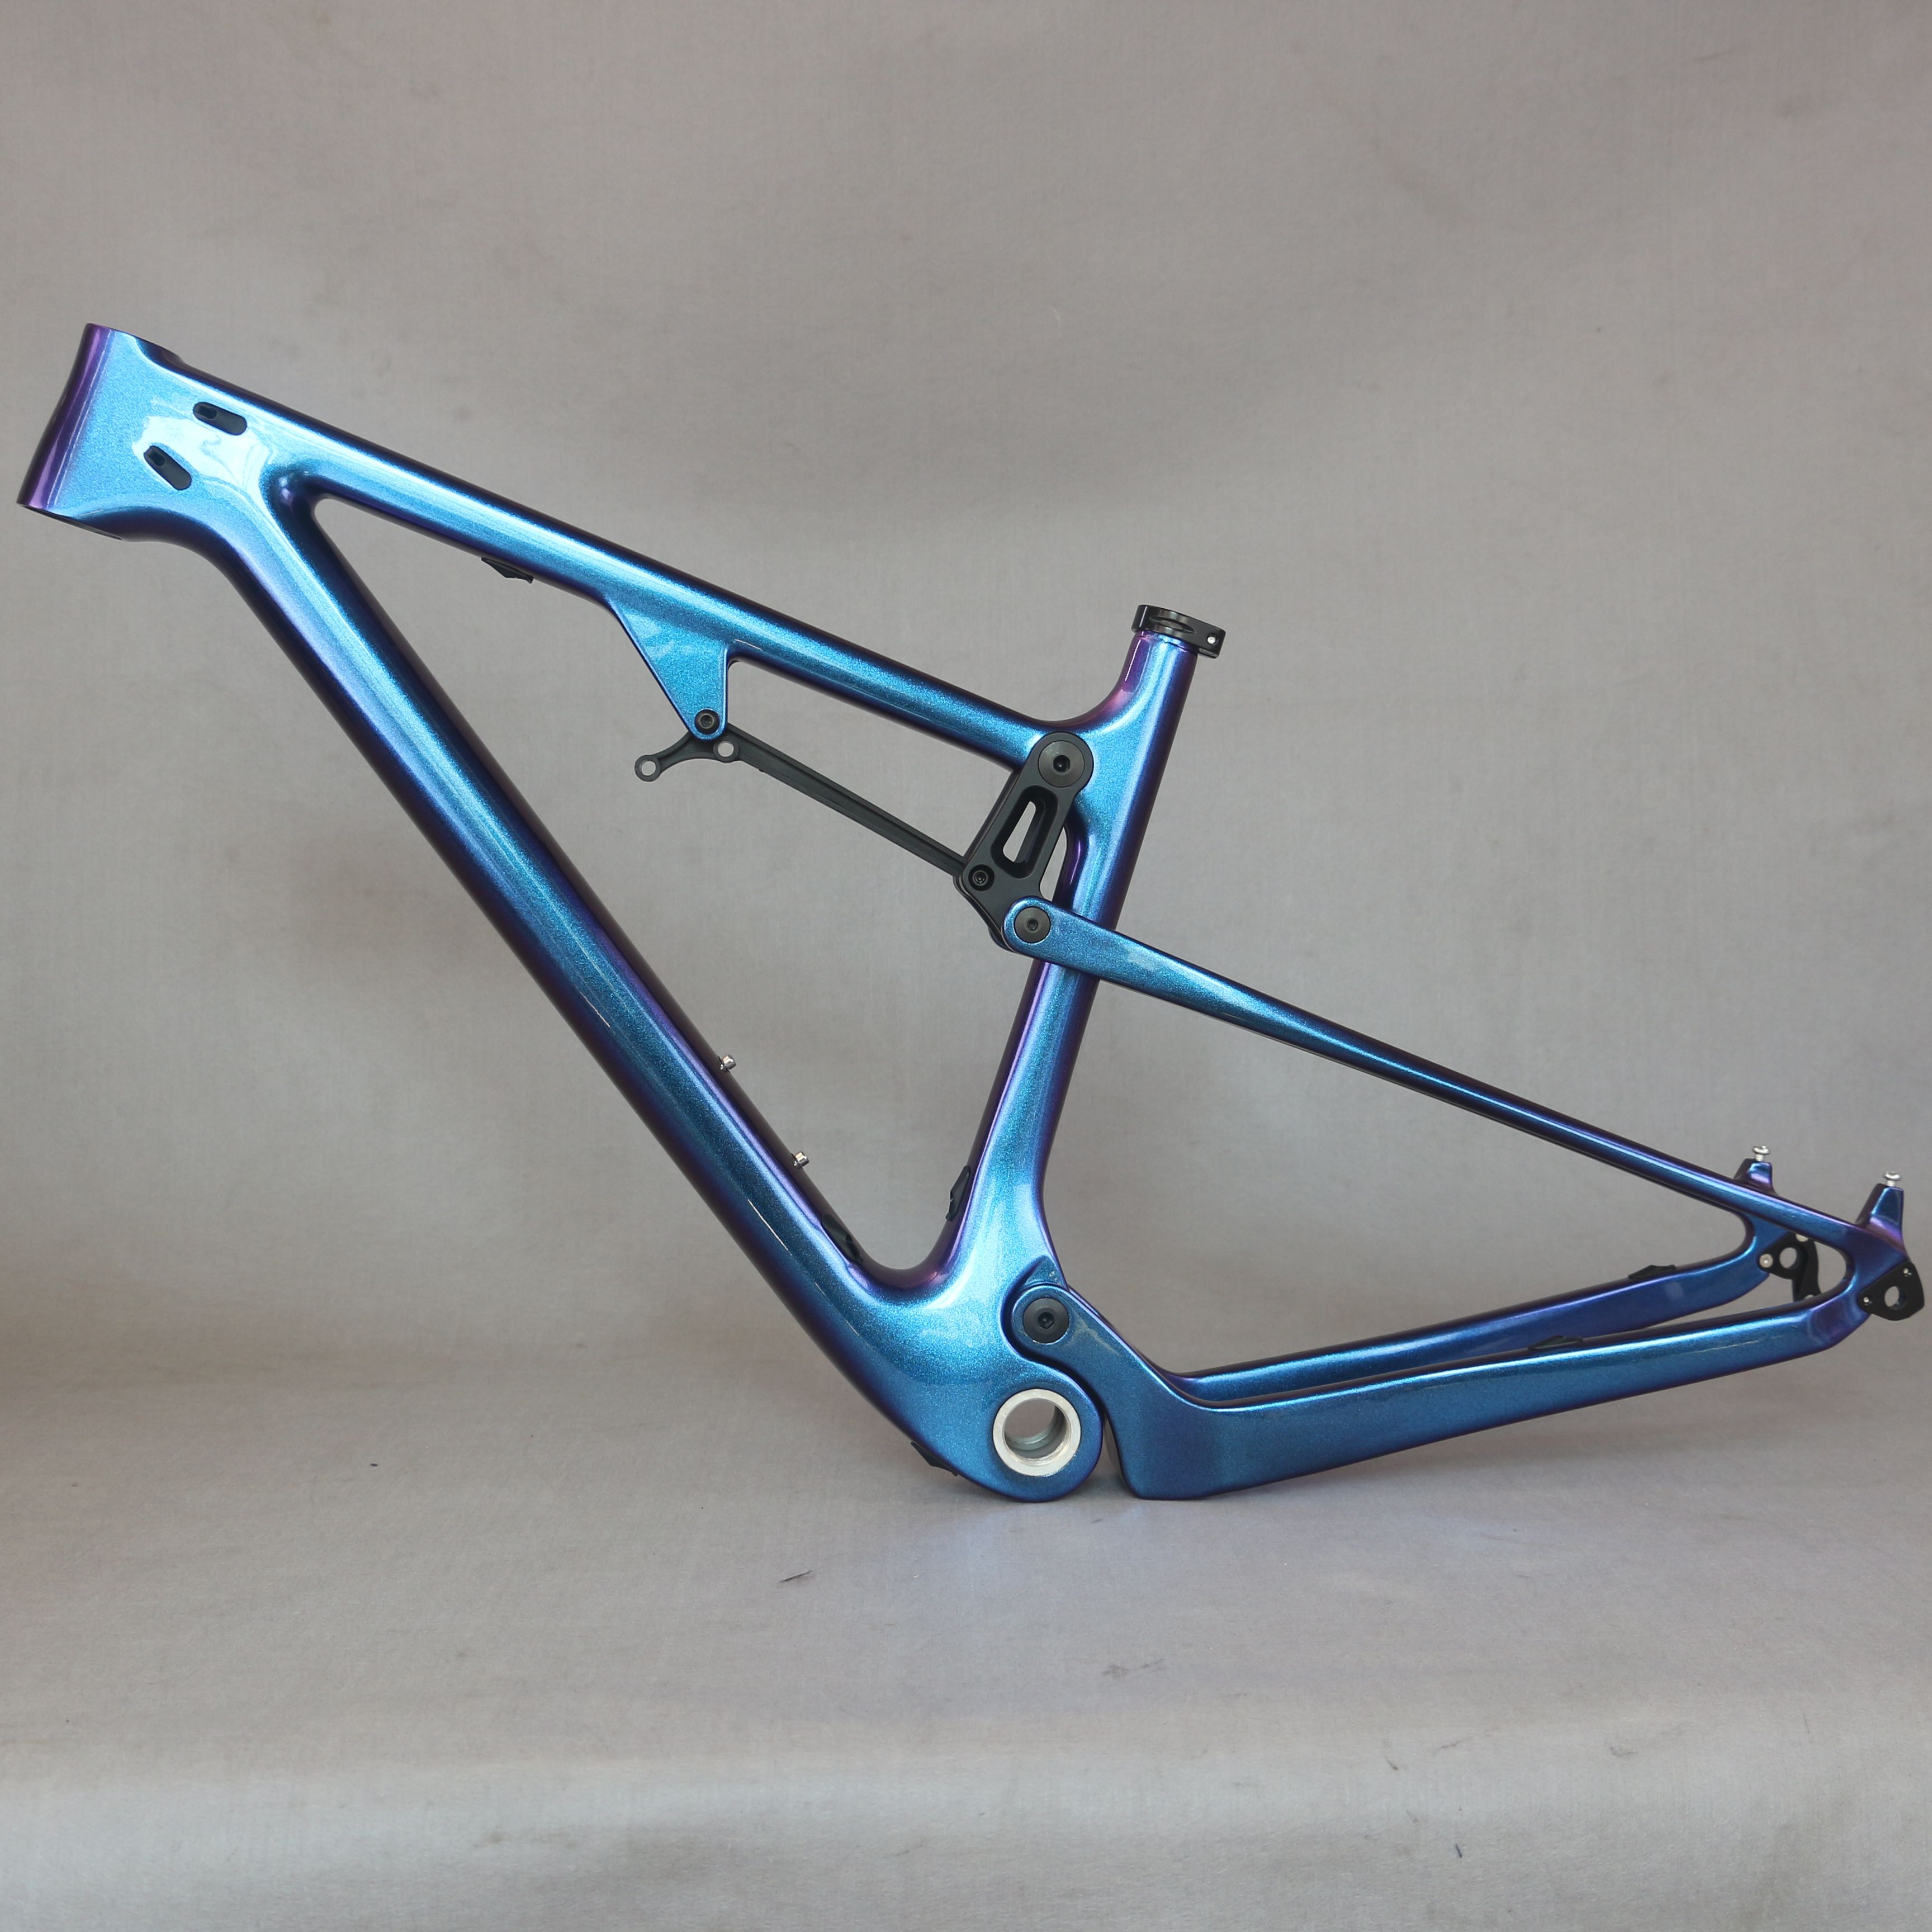 full suspension mountain bike frame 29